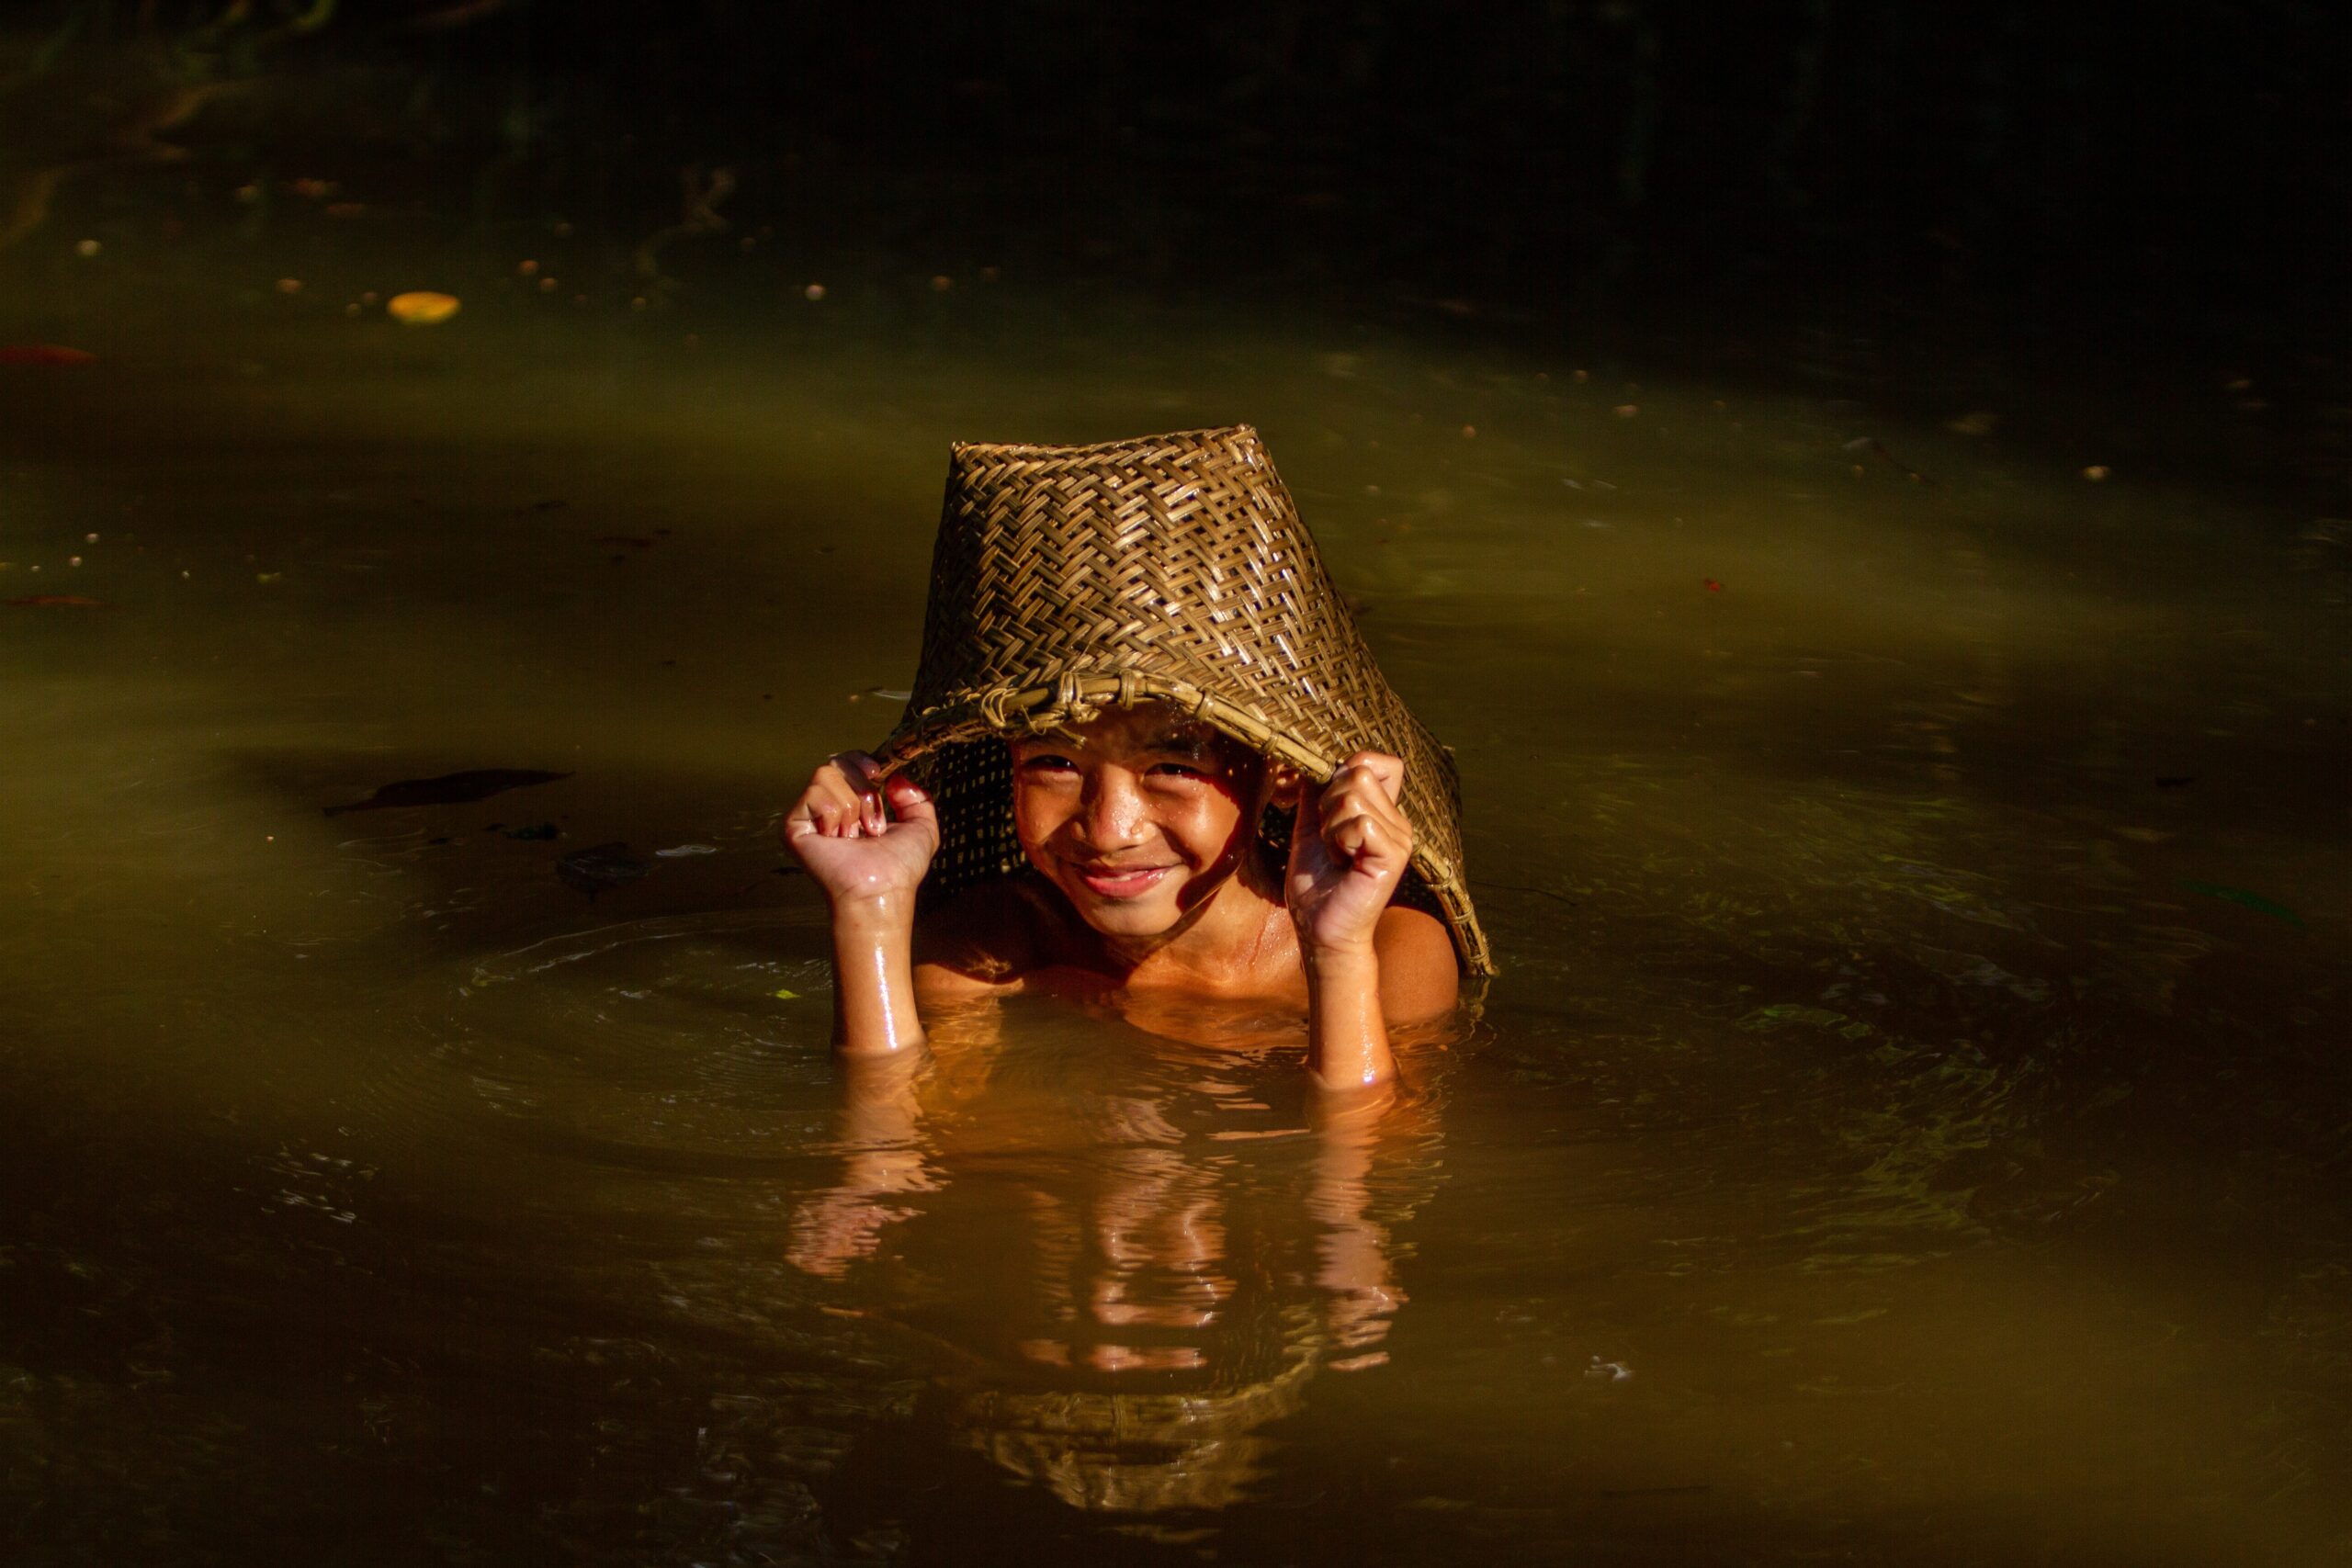 Criança do povo Dayak Kebhan da Indonésia brincando no rio. 
Ganhadores do Concurso de Fotografia “Soluções Inovadoras dos Povos Indígenas”
Nome da foto: Dayak Kebhan Children. Autor: Victor Fidelis Sentosa